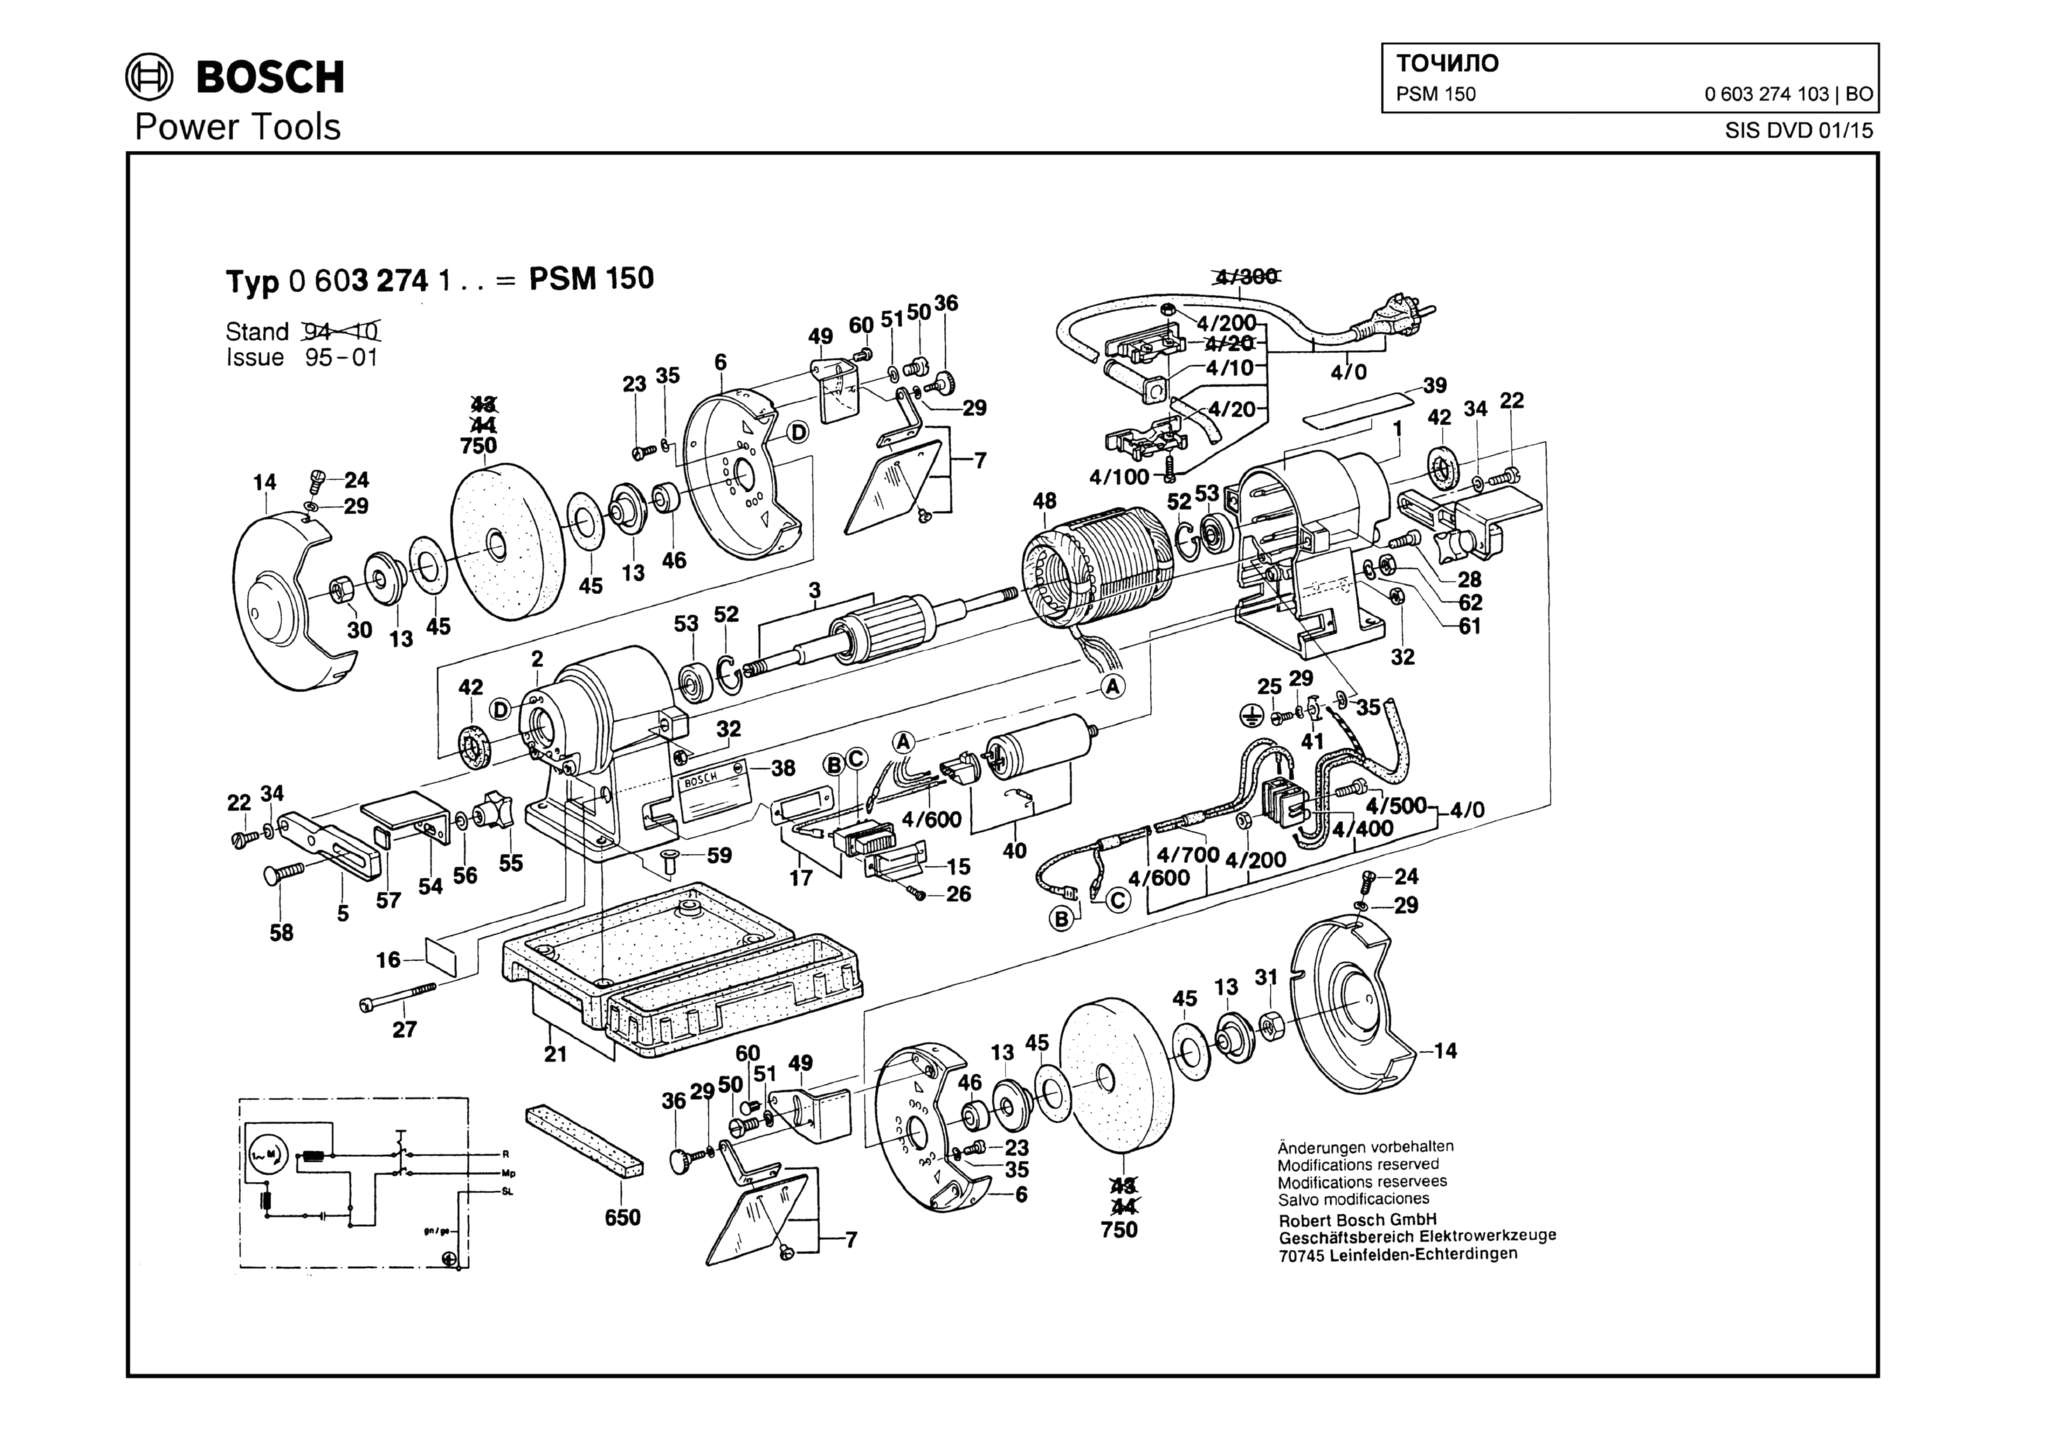 Запчасти, схема и деталировка Bosch PSM 150 (ТИП 0603274103)